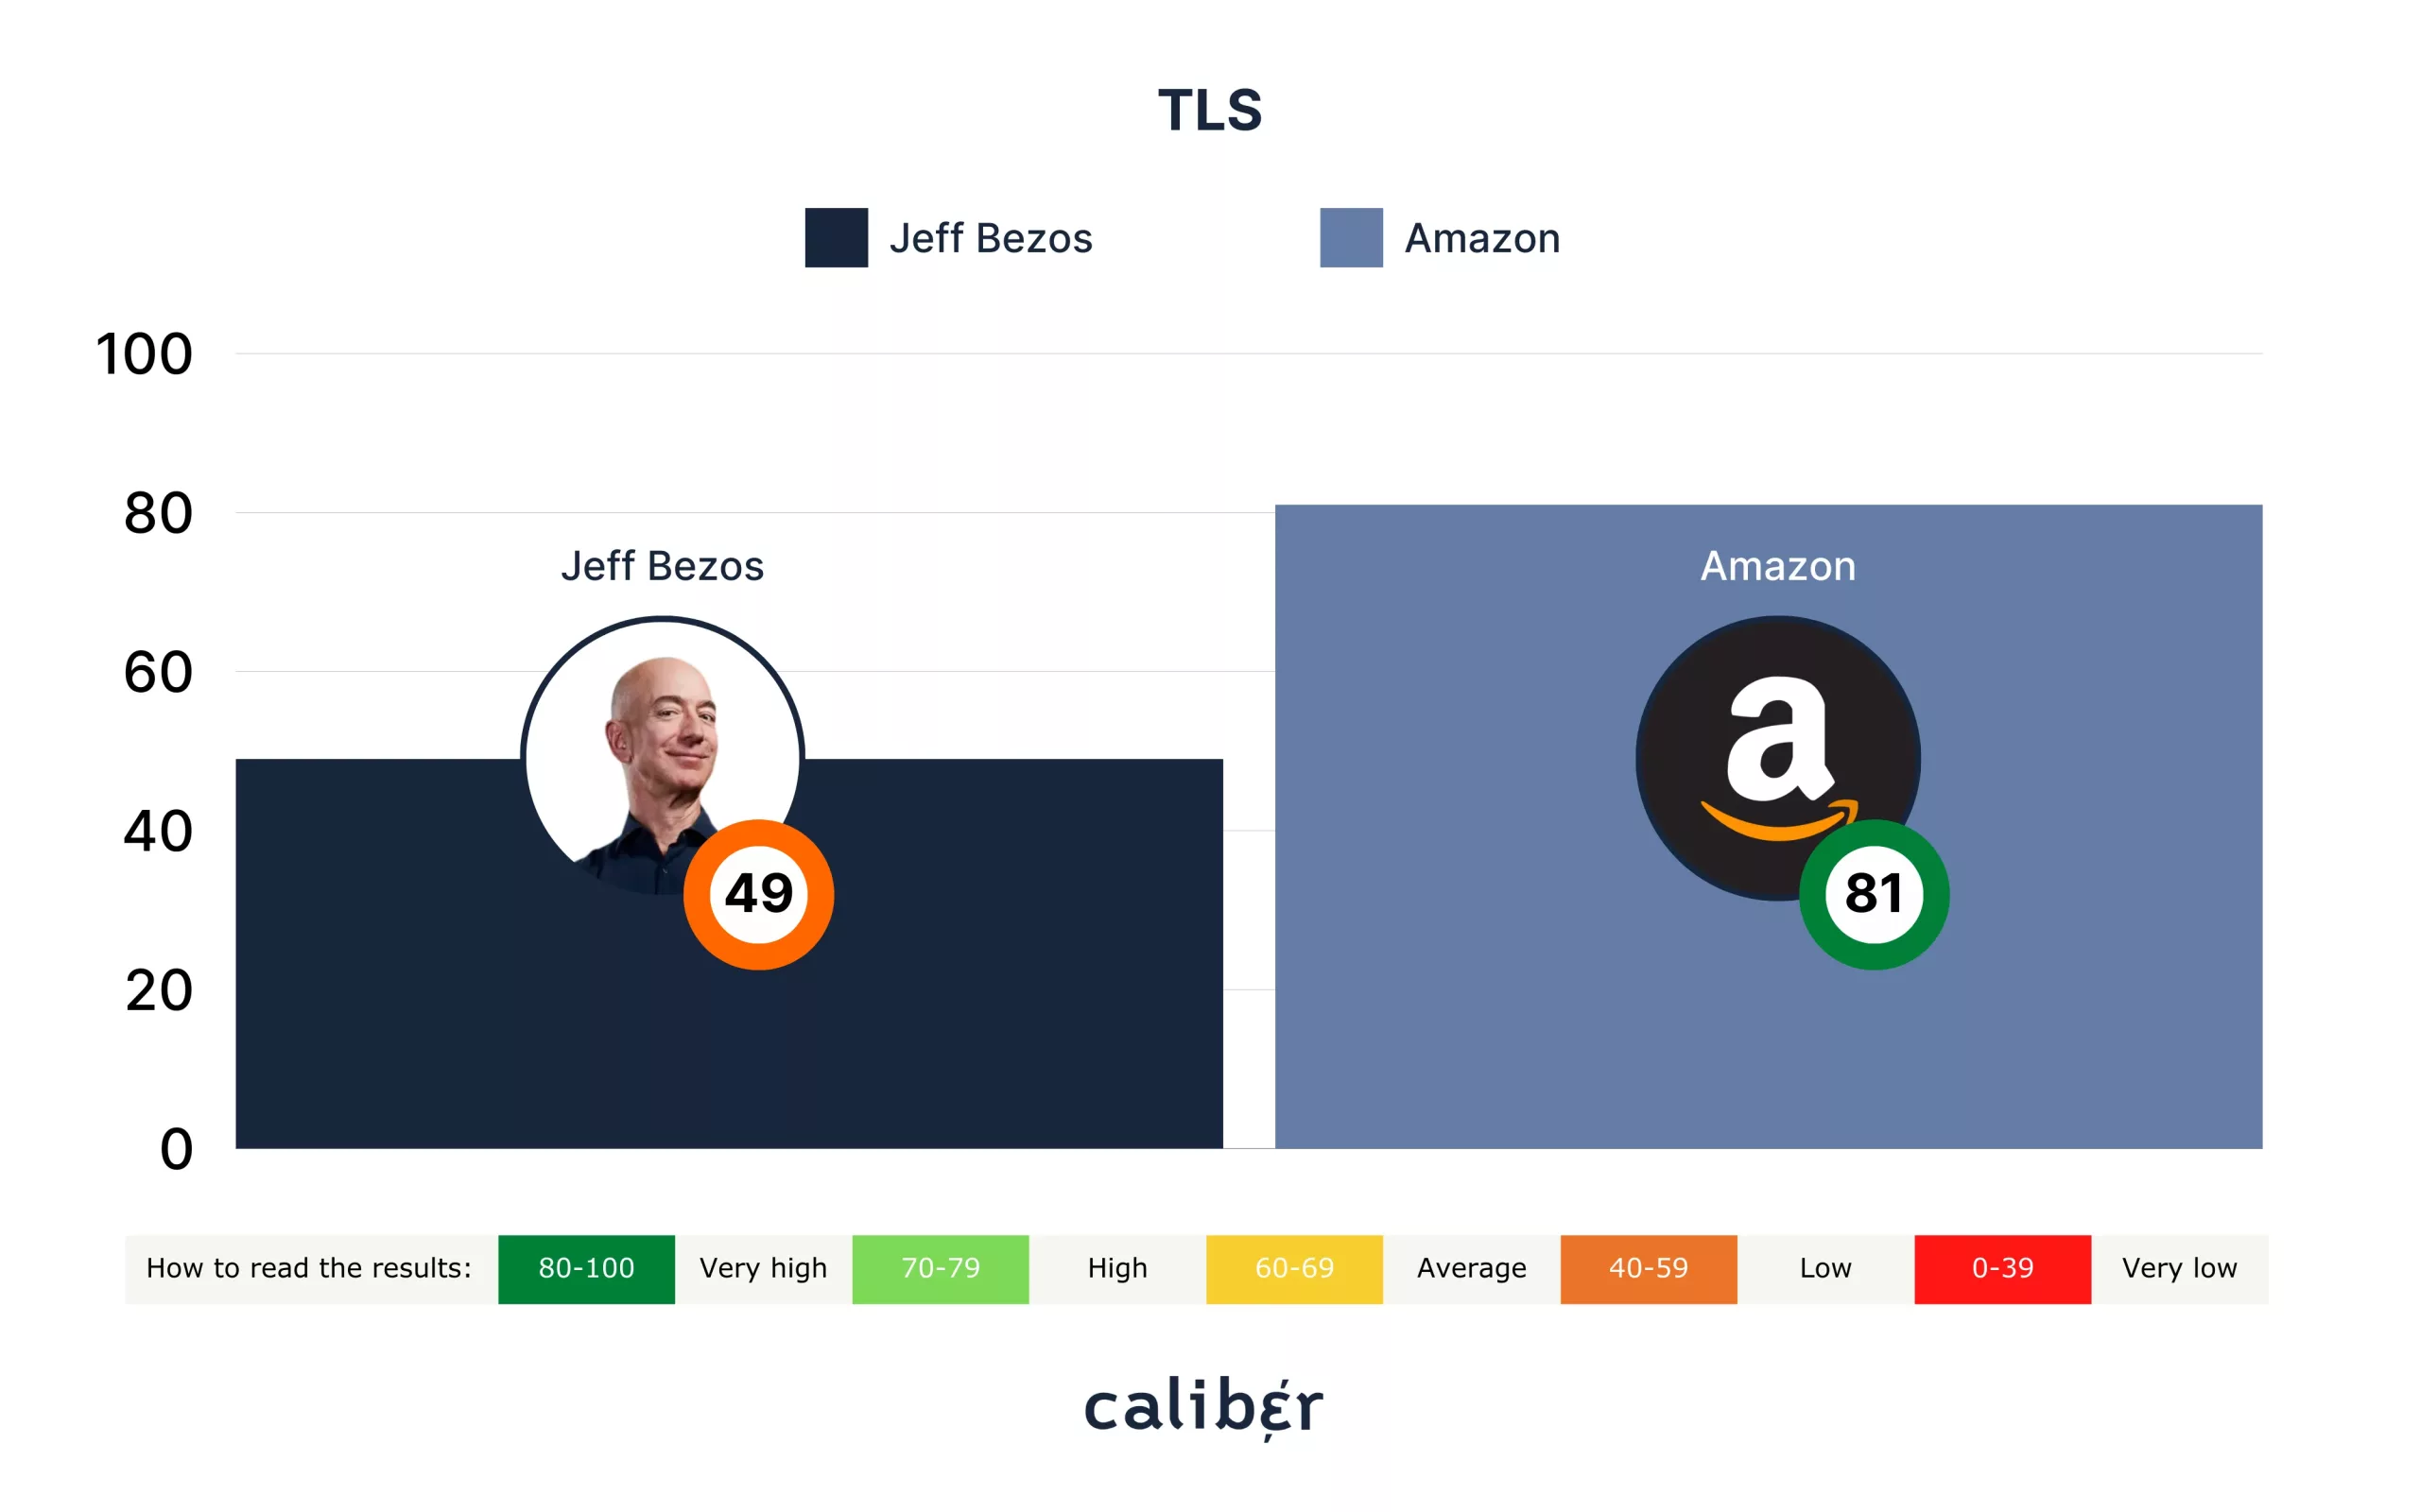 Jeff Bezos TLS Score